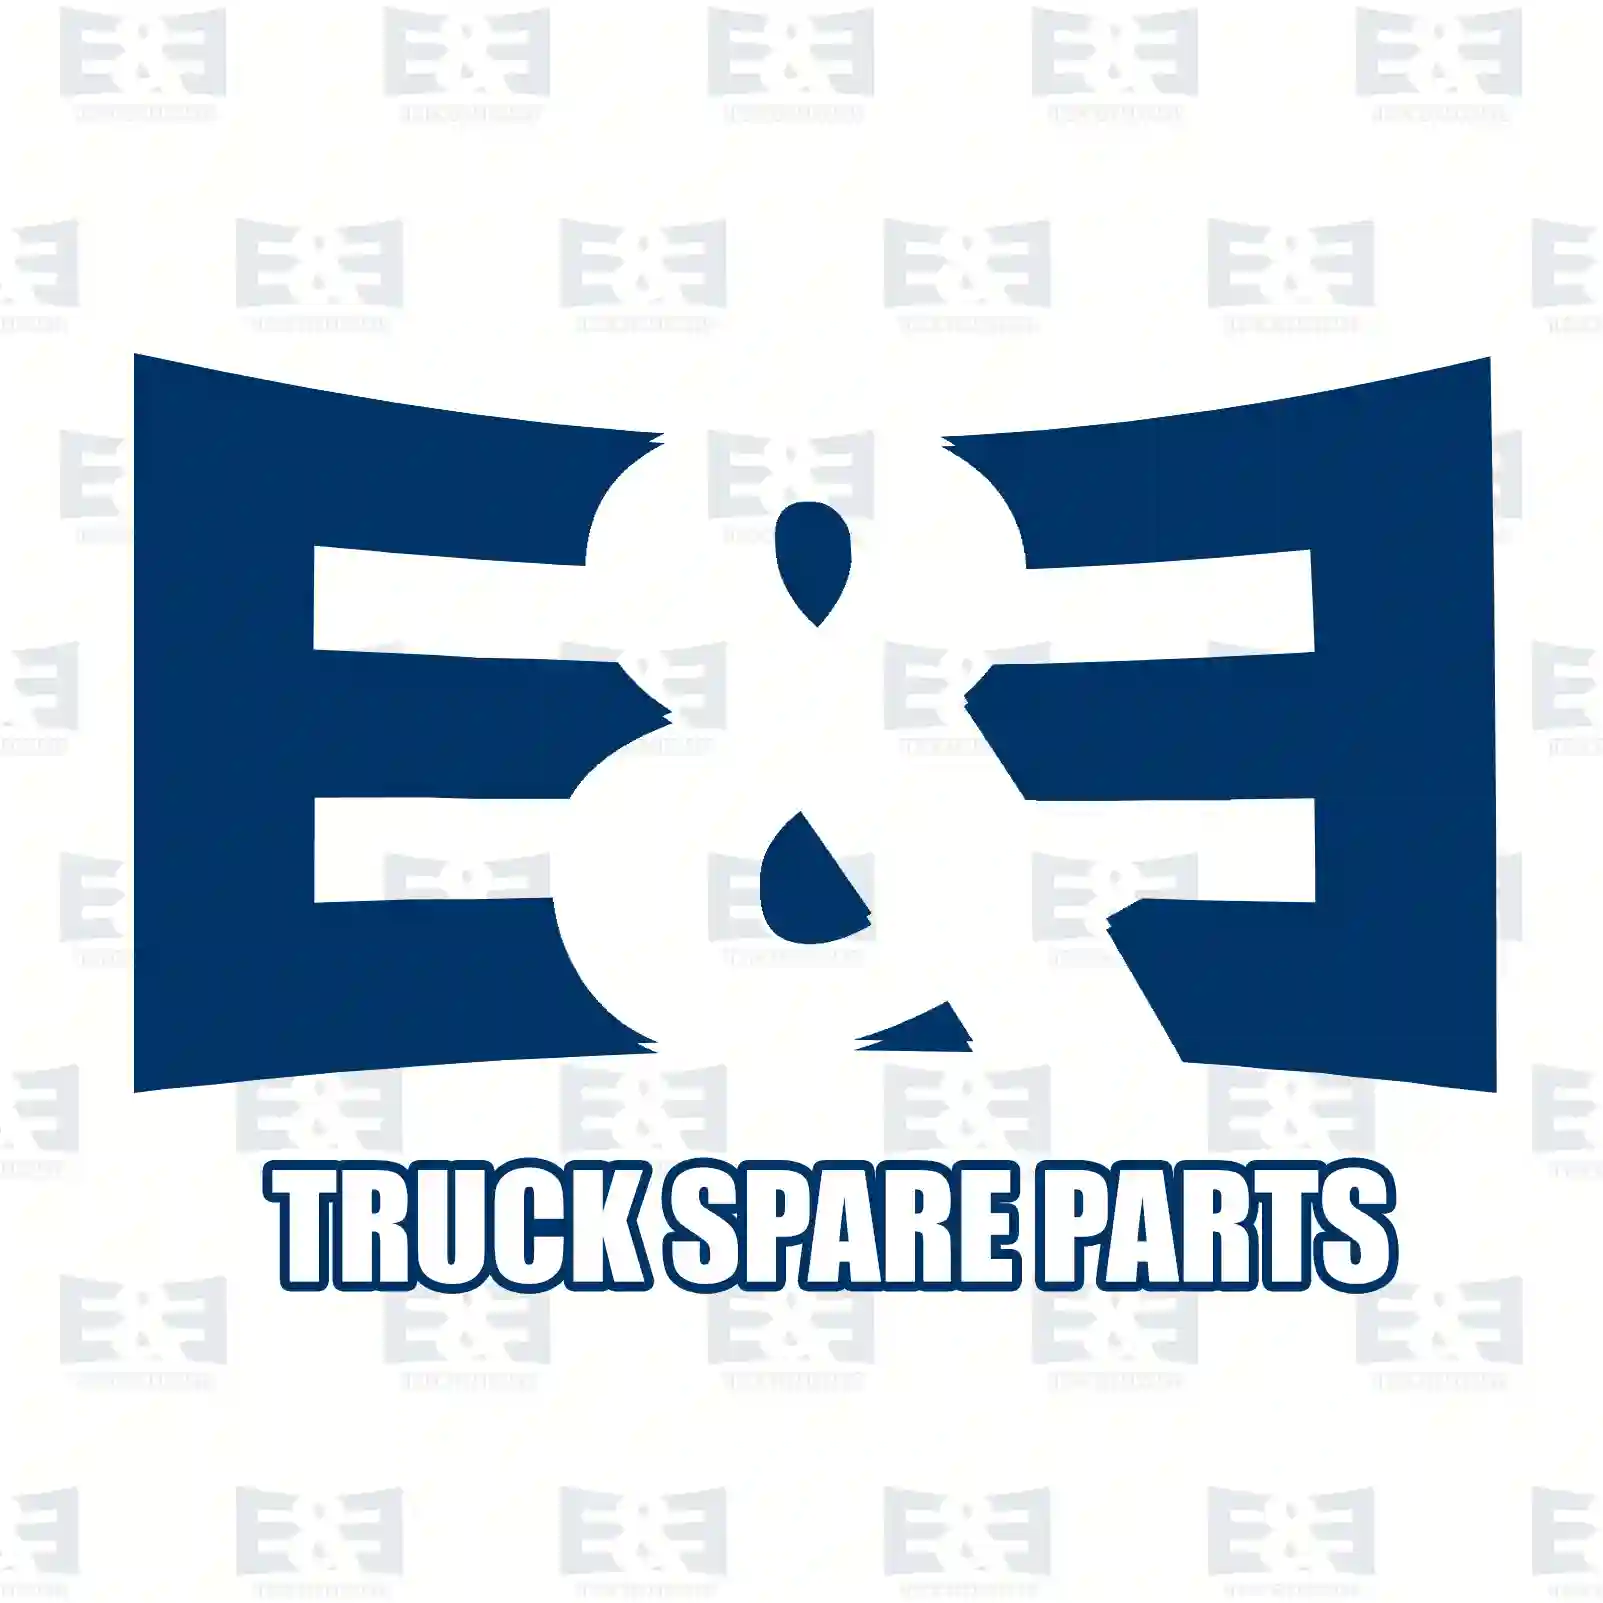 Condenser, 2E2275429, 6455EC, 1347842080, 6455EC ||  2E2275429 E&E Truck Spare Parts | Truck Spare Parts, Auotomotive Spare Parts Condenser, 2E2275429, 6455EC, 1347842080, 6455EC ||  2E2275429 E&E Truck Spare Parts | Truck Spare Parts, Auotomotive Spare Parts